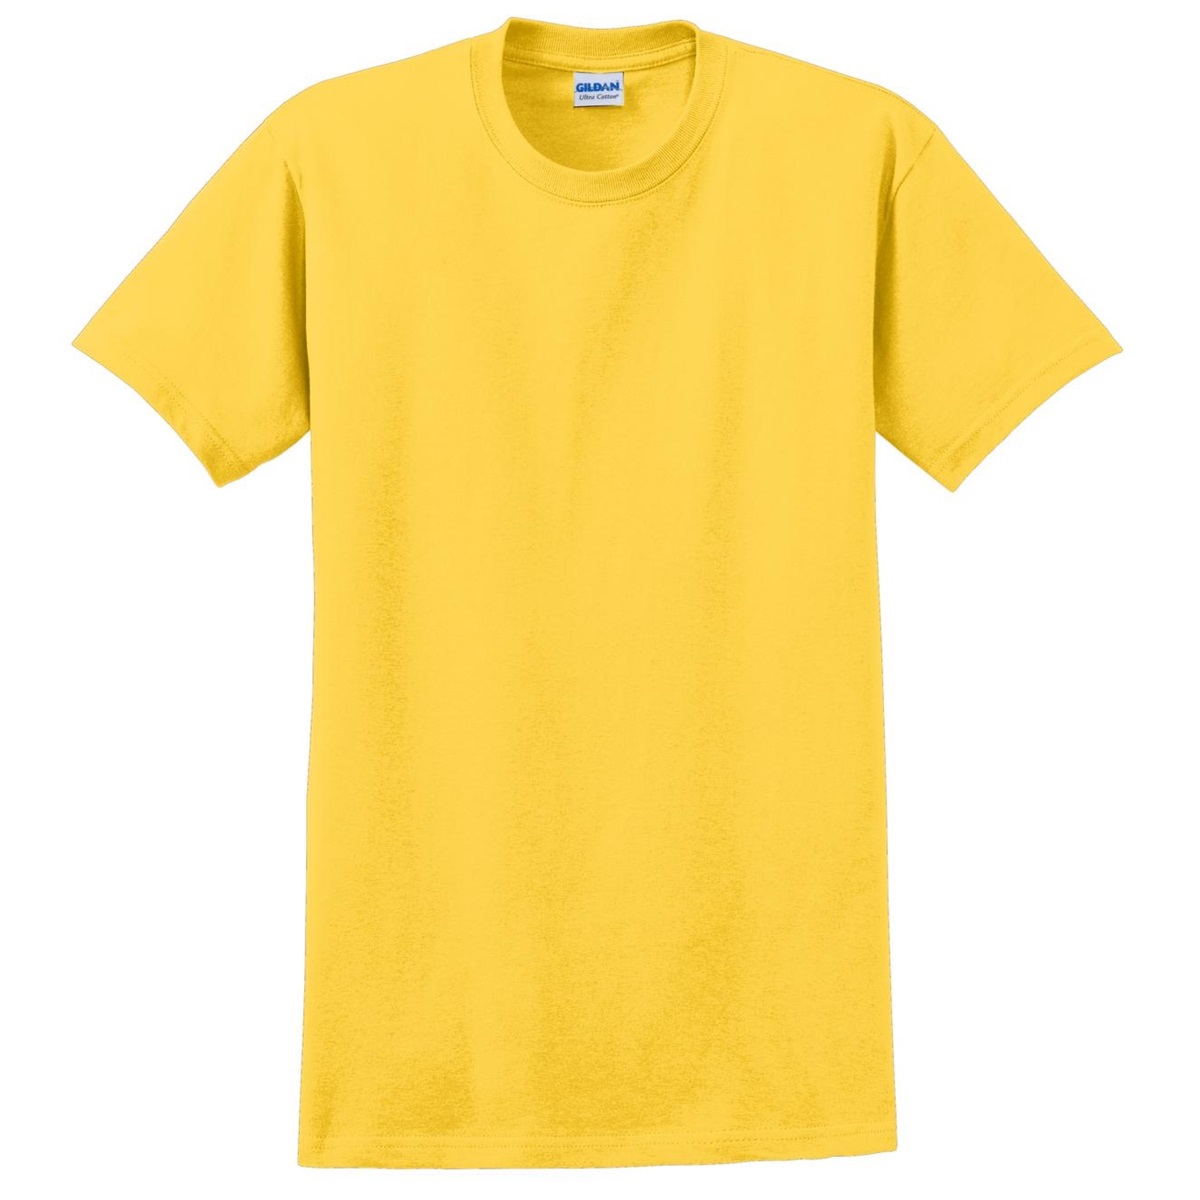 Download Gildan 2000 Ultra Cotton T-Shirt - Daisy | FullSource.com